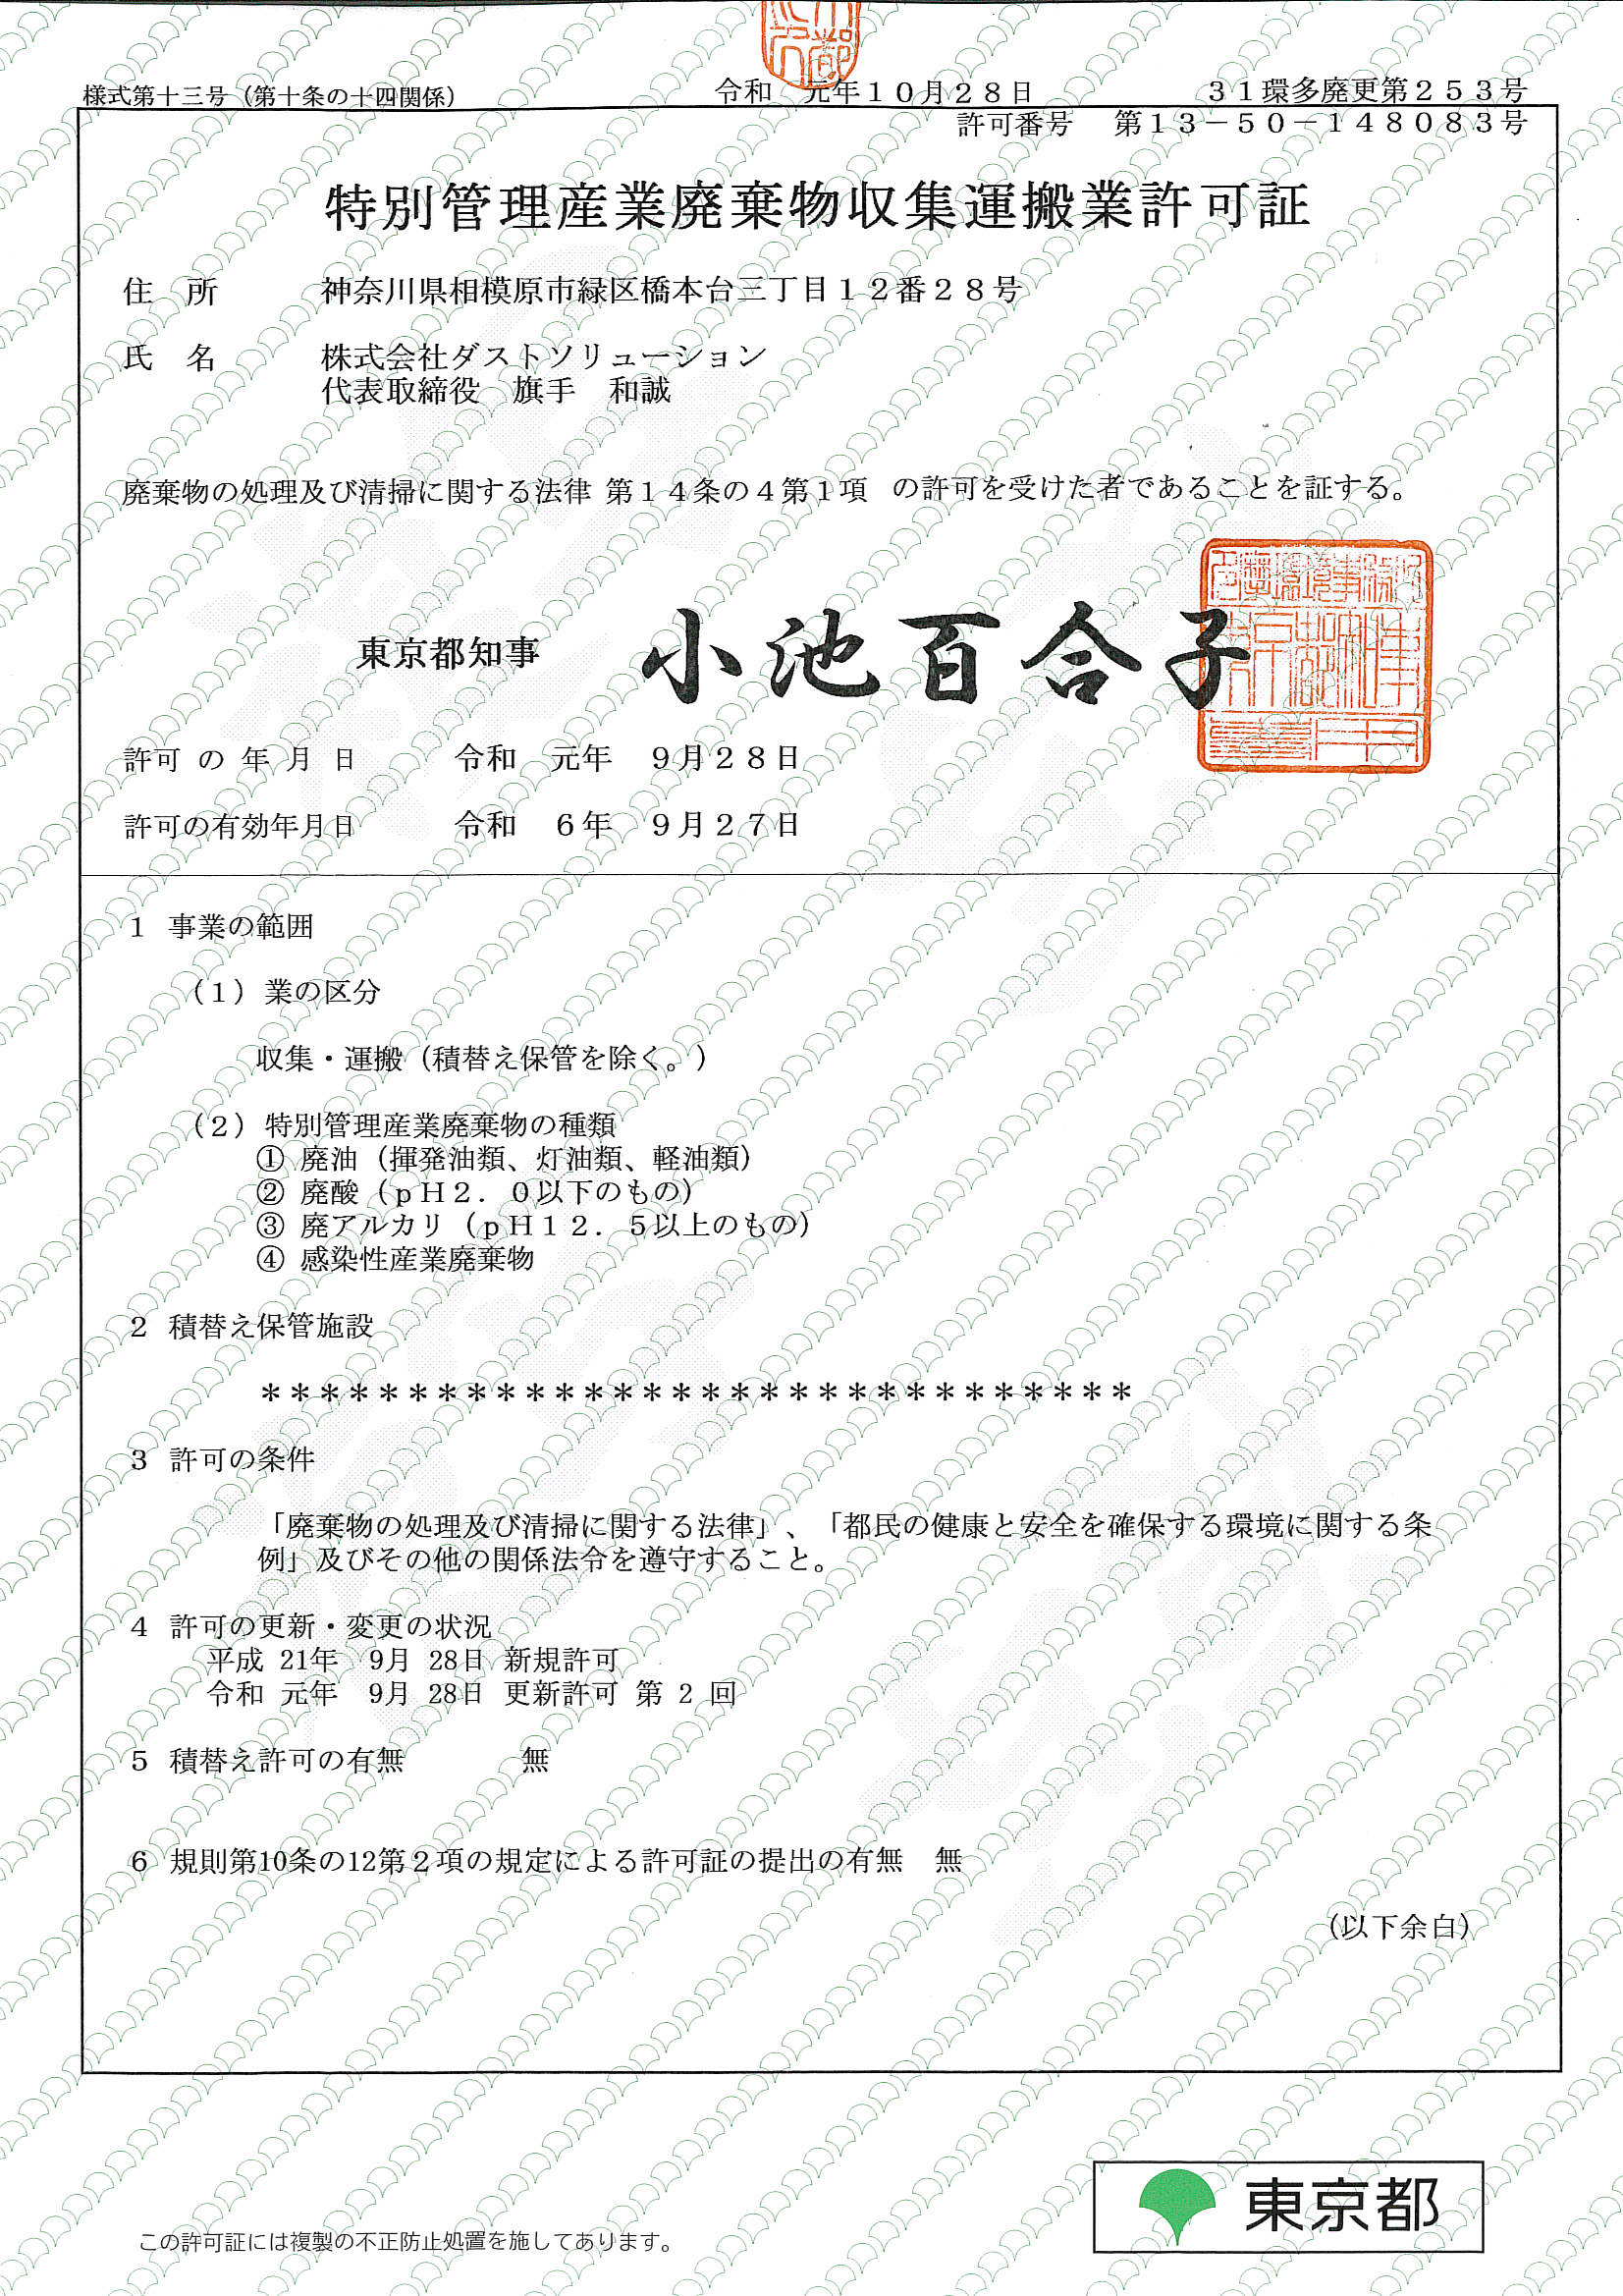 東京都特別産業廃棄物収集運搬業許可証